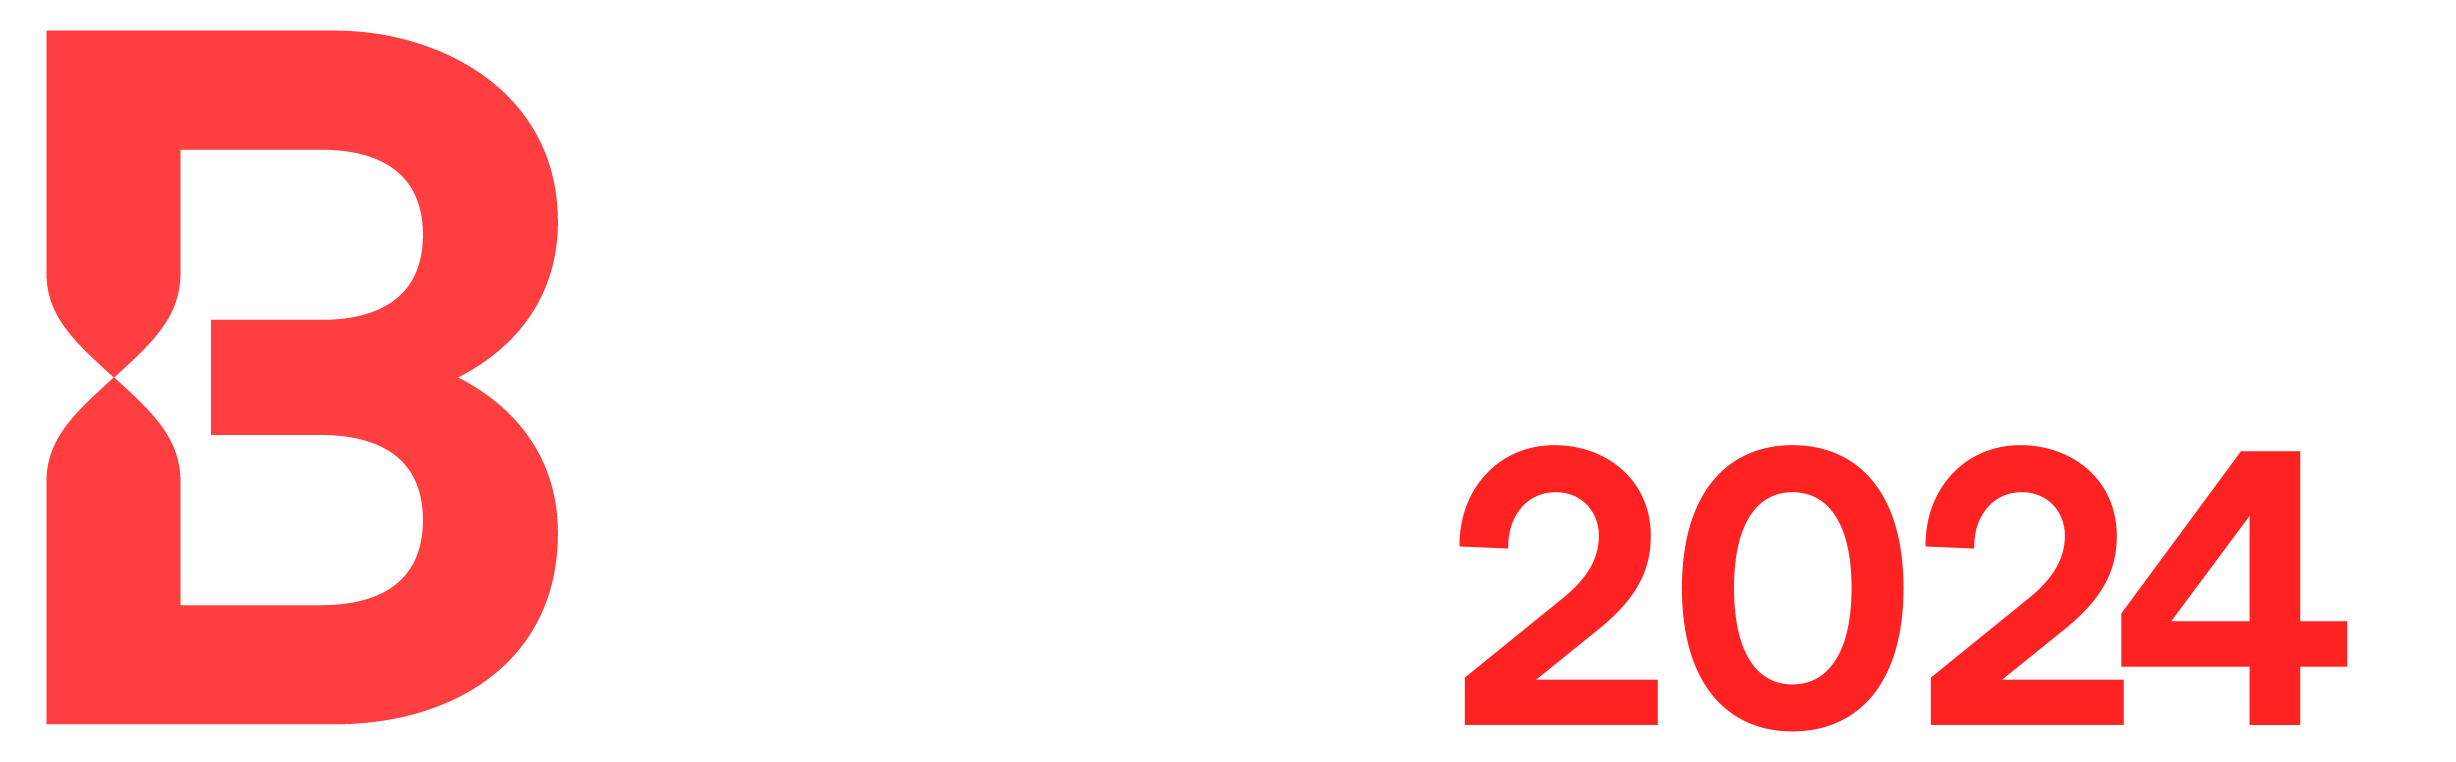 Městský běh Brandýsem a Boleslaví 2024